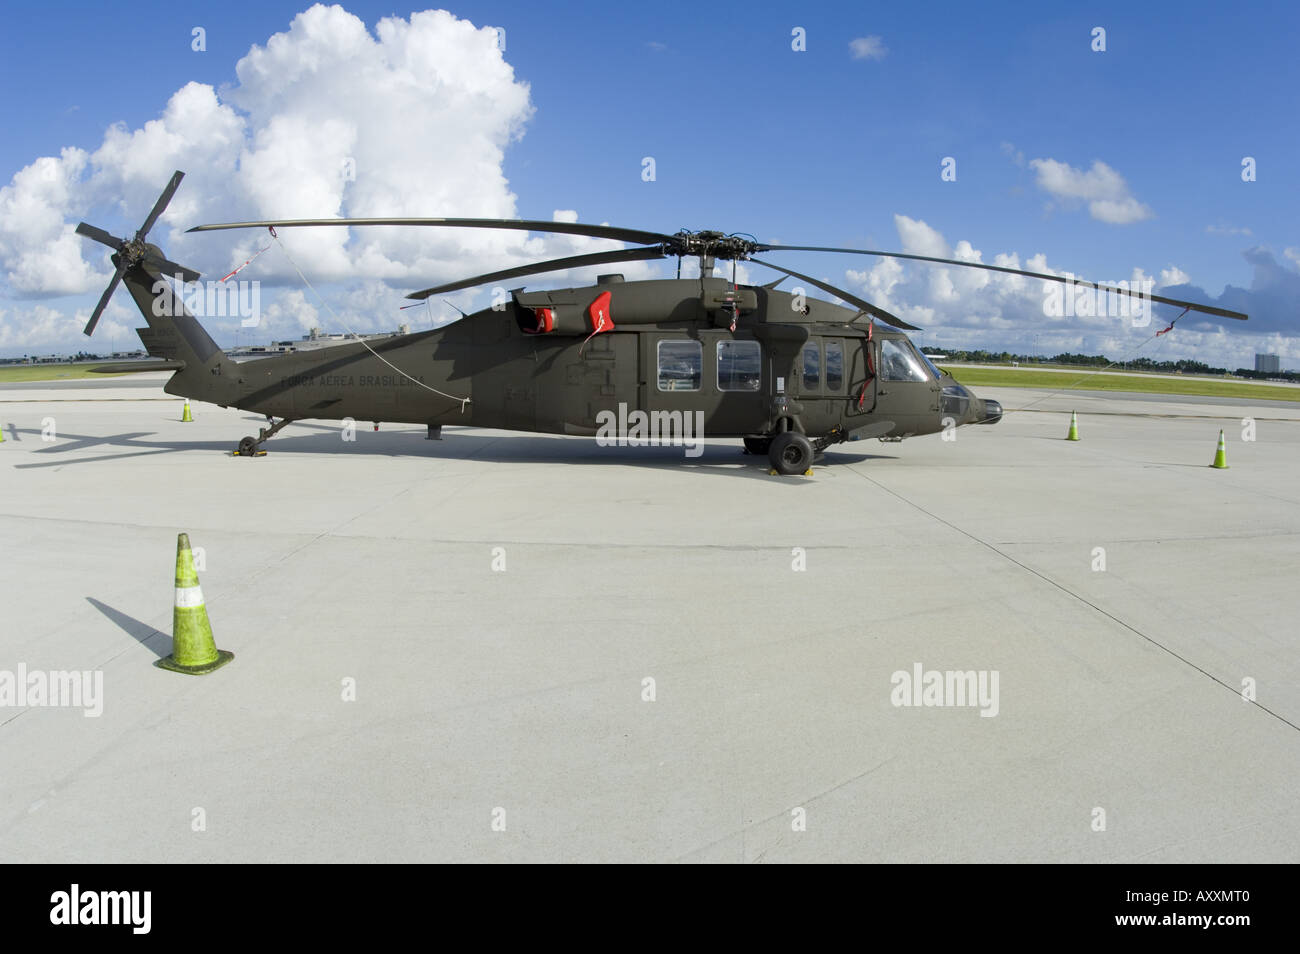 Forca Aerea Brasileira Helicopterp Helikopter militärische Hubschrauber Flugzeug Stockfoto